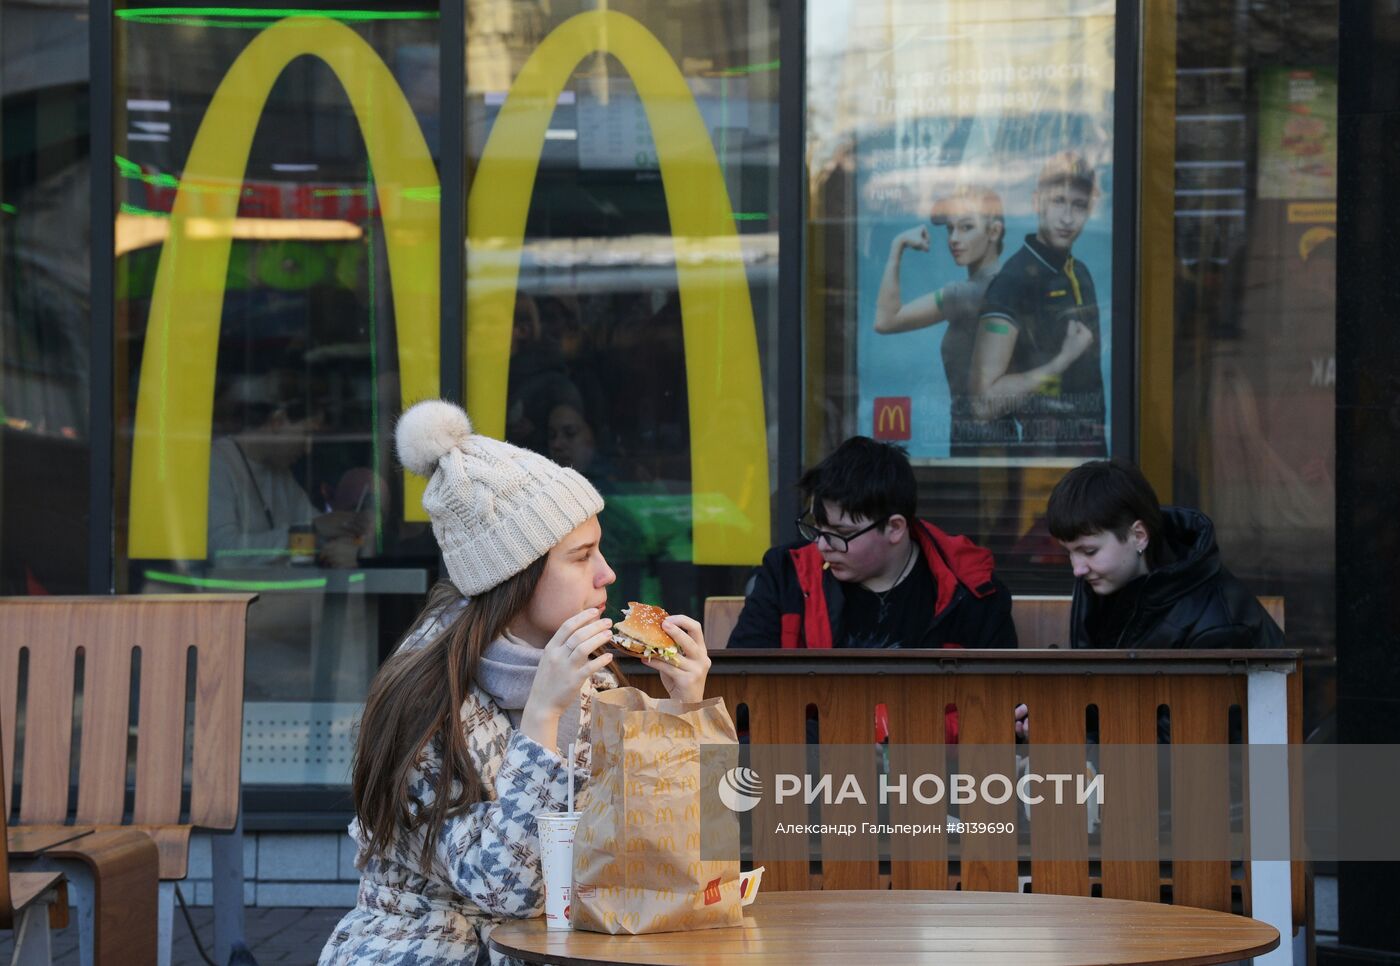 Последний день работы ресторанов "Макдоналдс" перед закрытием в России